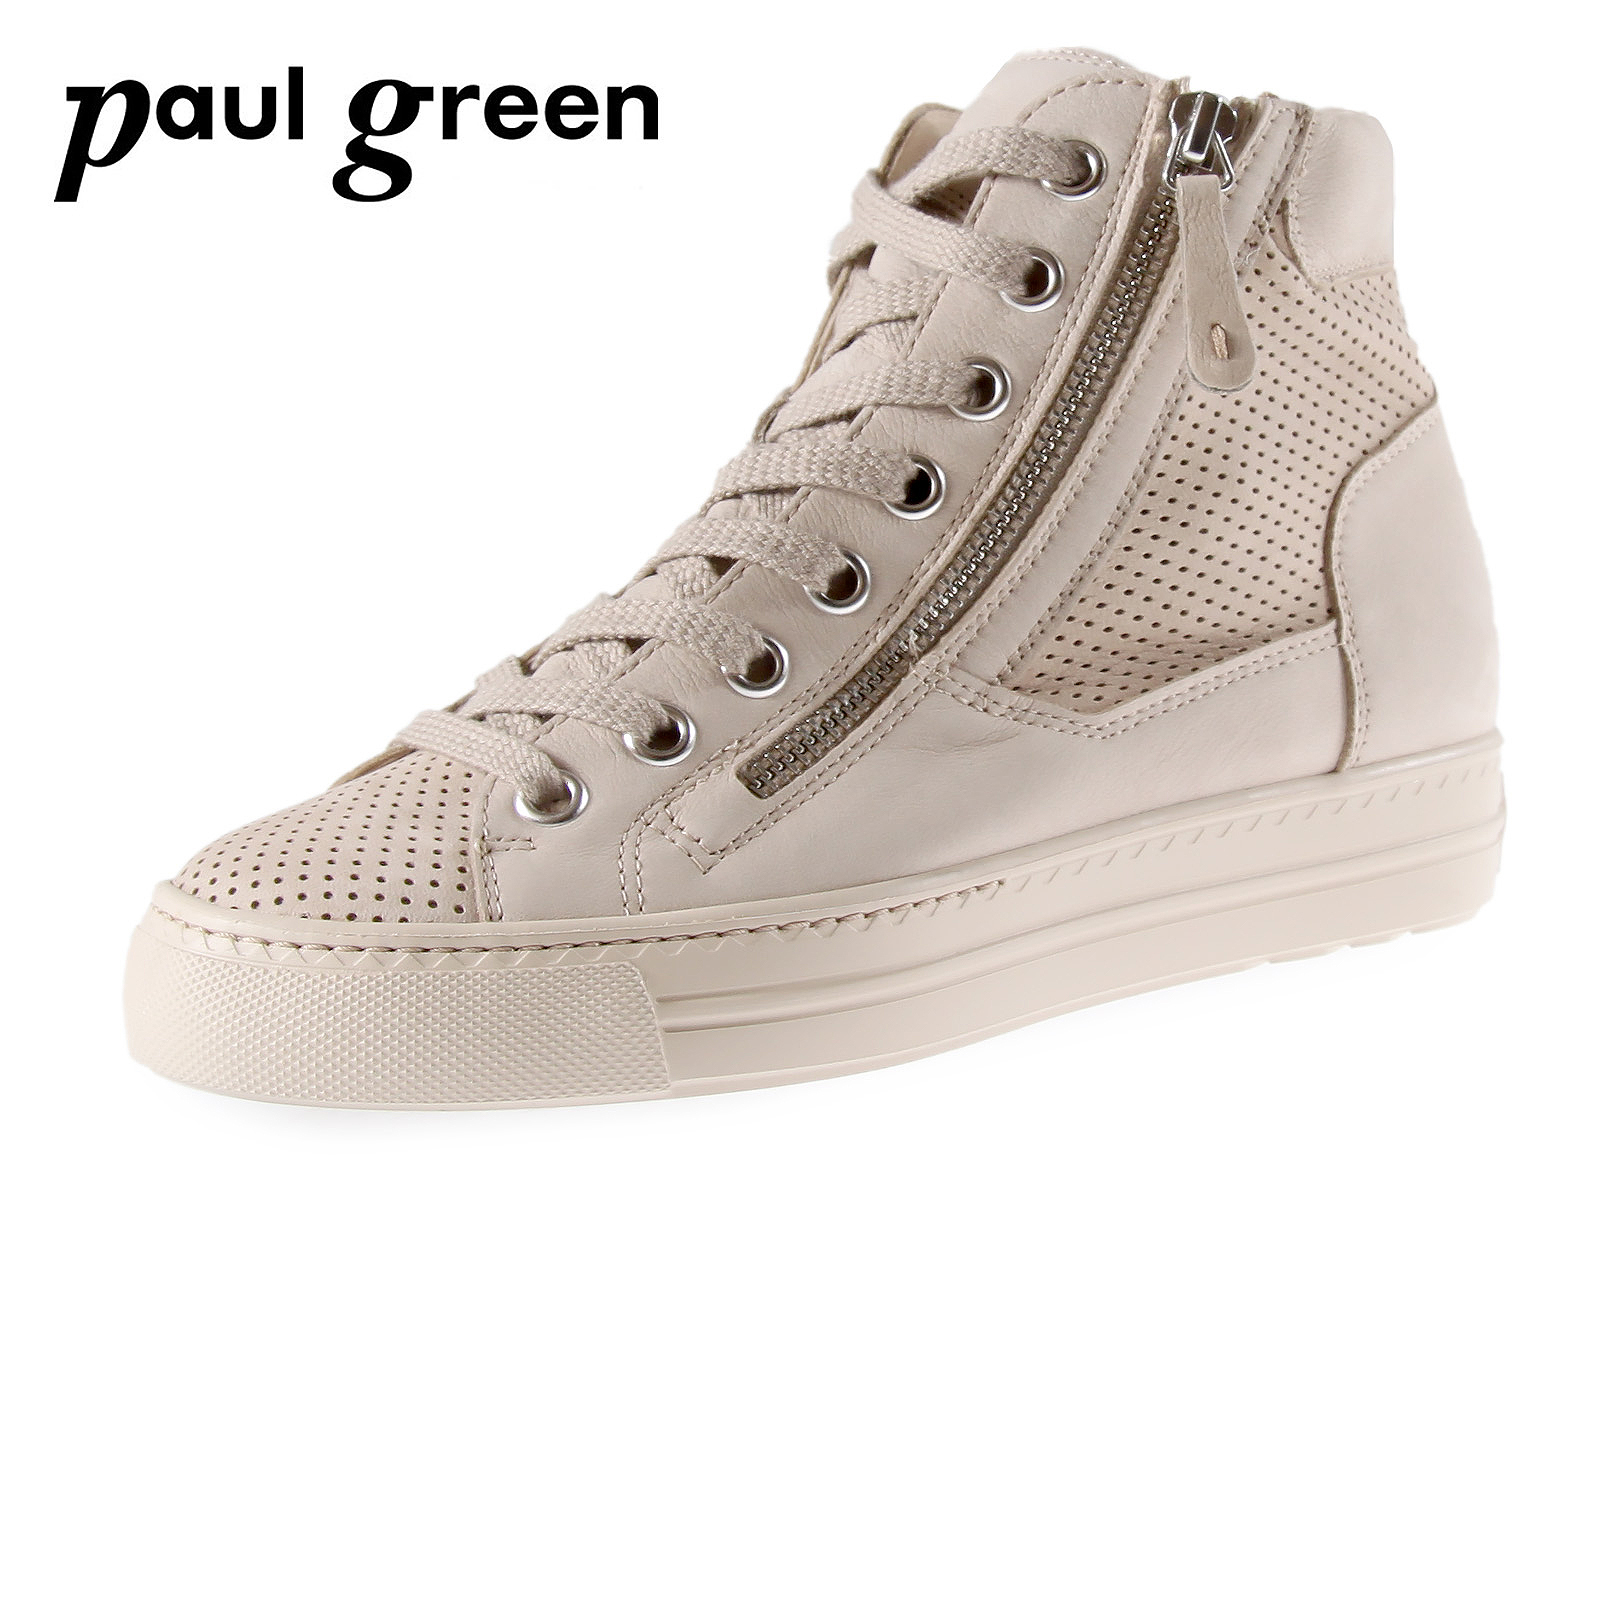 heroïsch Cumulatief Tegenwerken Zandkleurige hoge sneaker van Paul Green